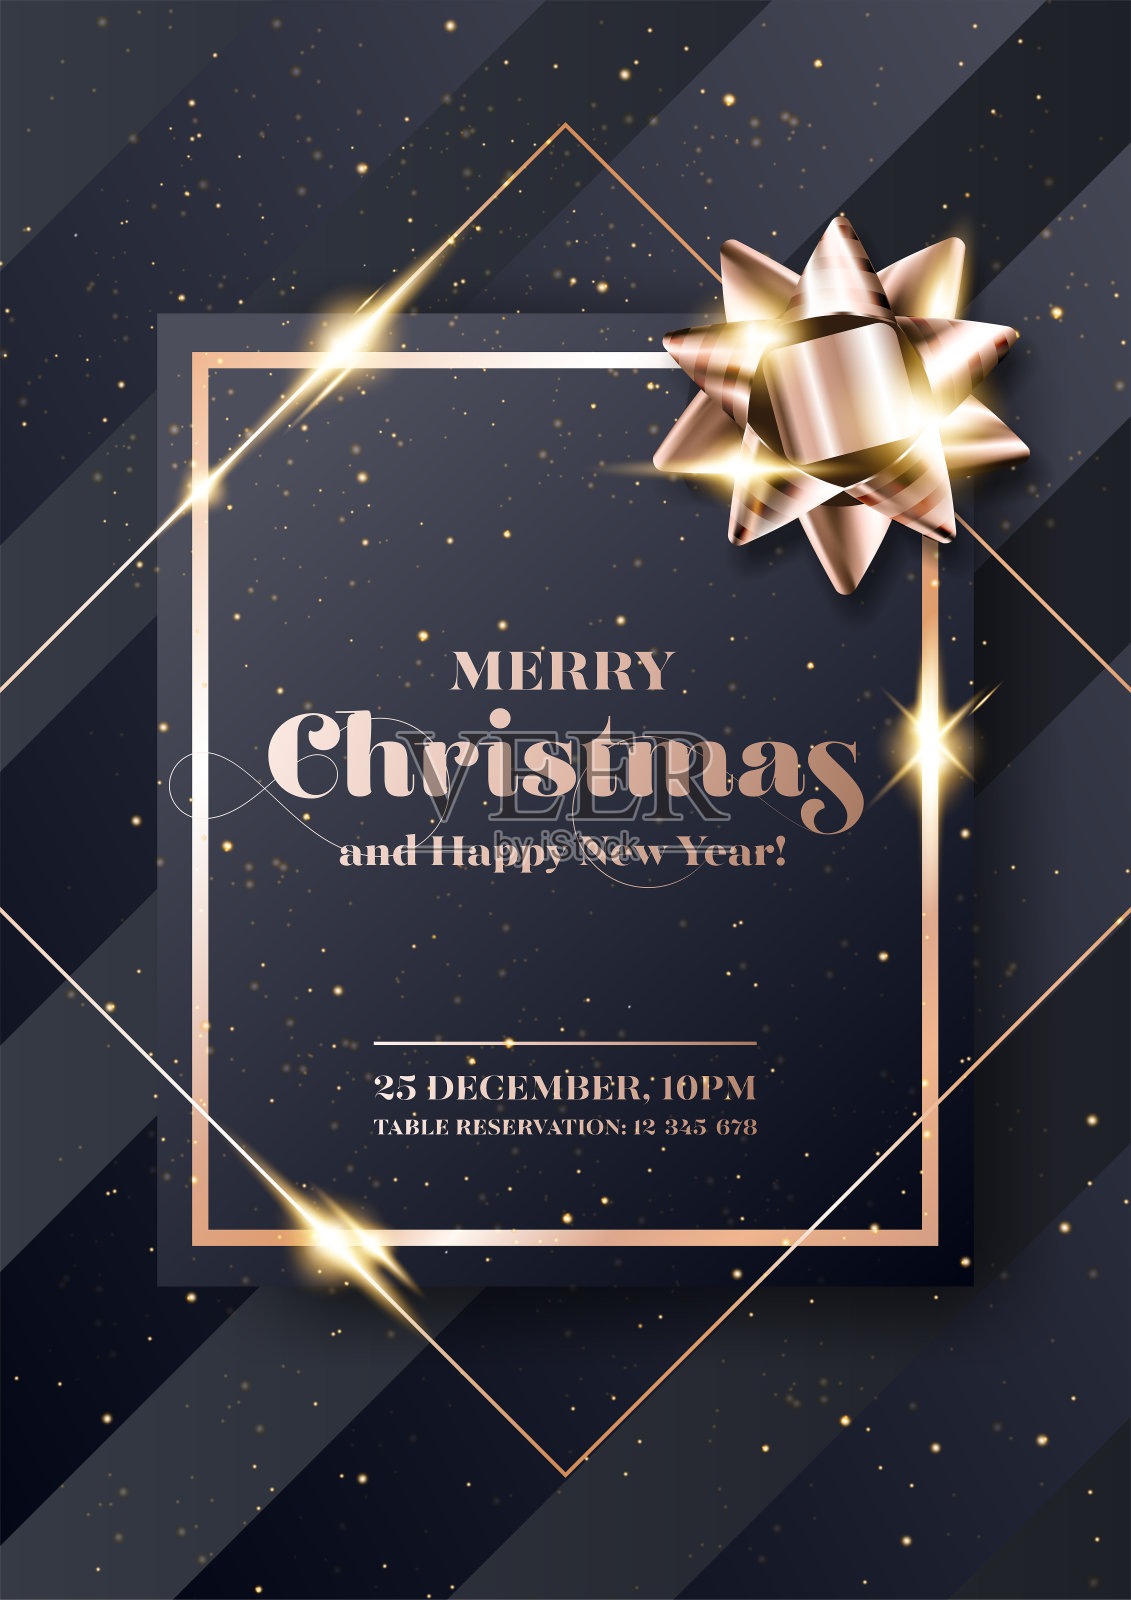 圣诞快乐向量背景。极简主义圣诞2020派对邀请，卡片，海报，封面模板在黑色和玫瑰金色。严格、奢华、别致、优雅的风格。设计模板素材